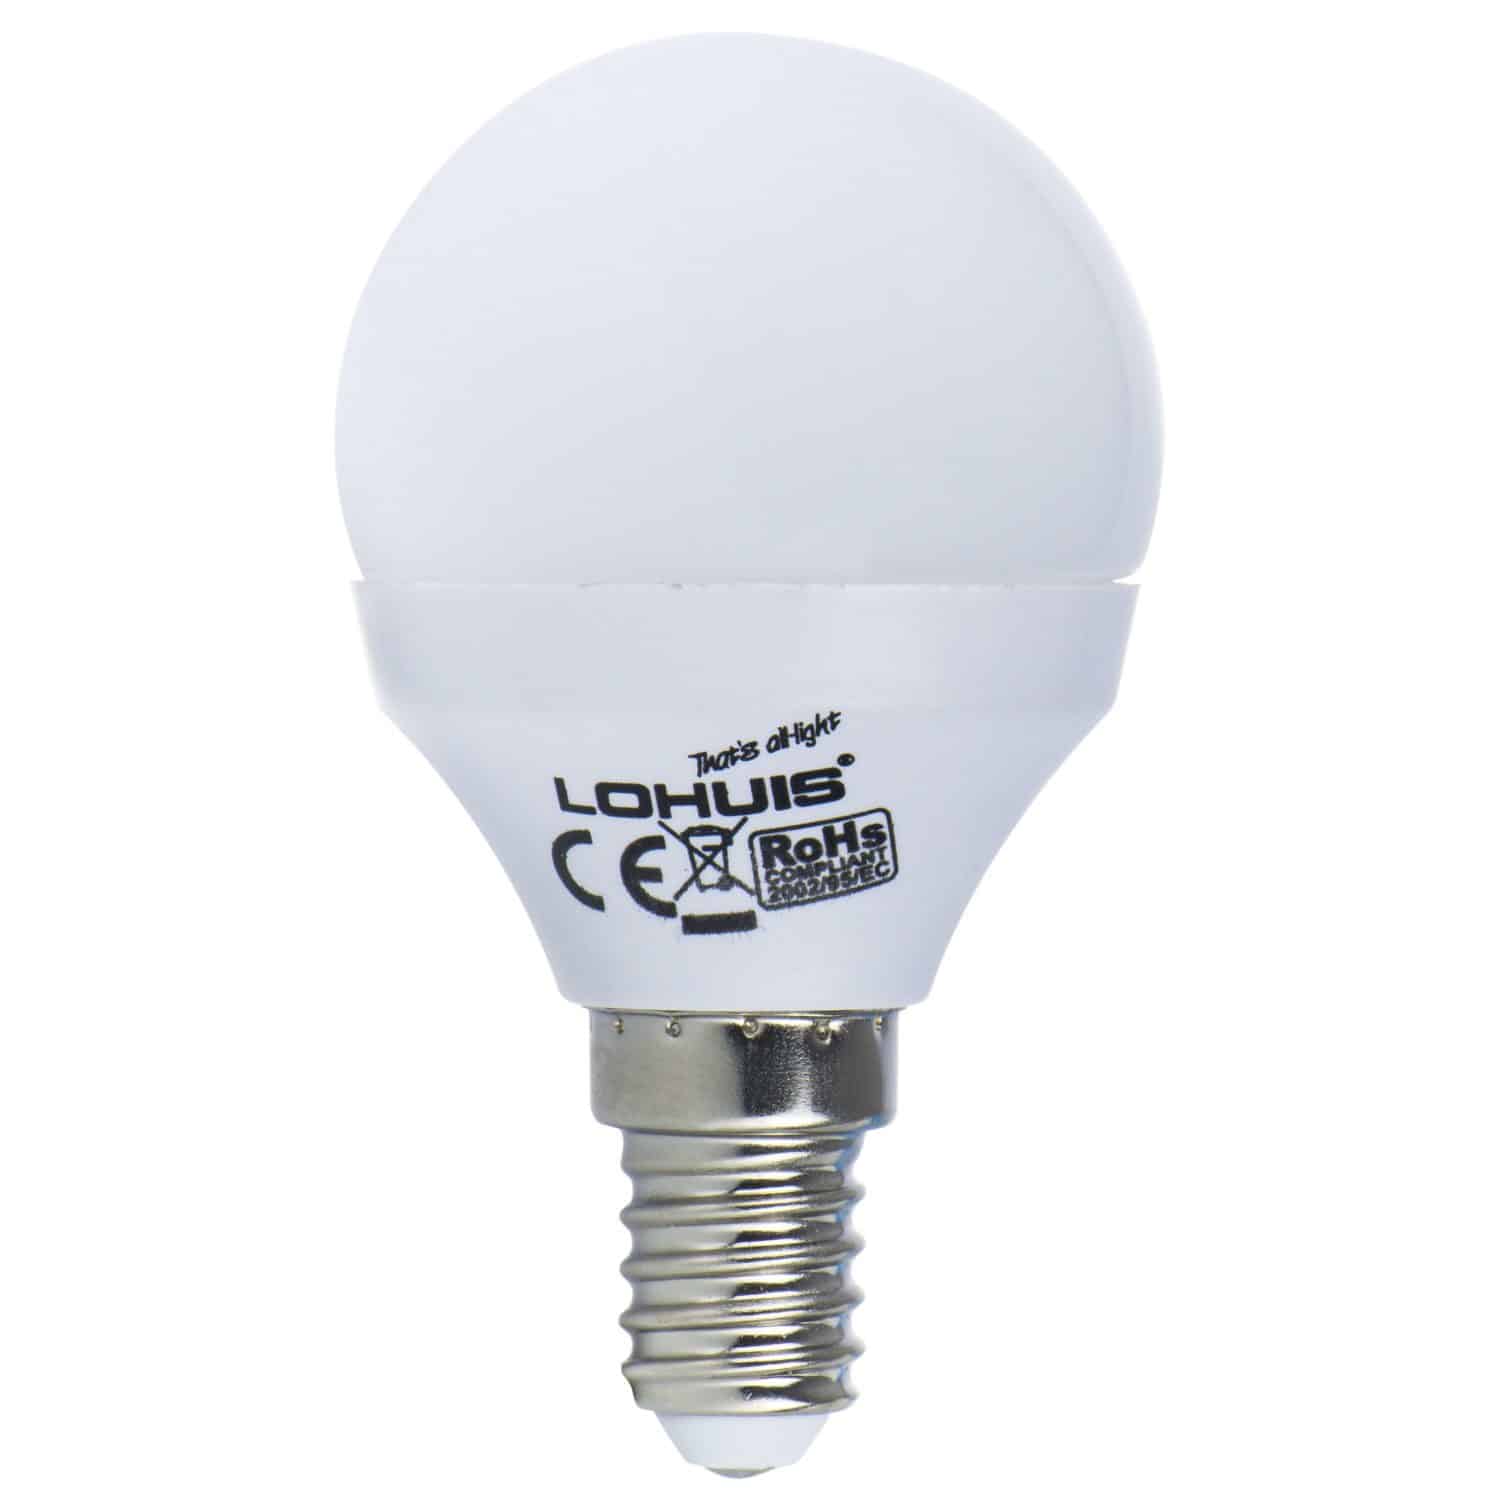 Bec LED Lohuis, glob, E14, 4 W, 400 lm, lumina rece 6500 K 400